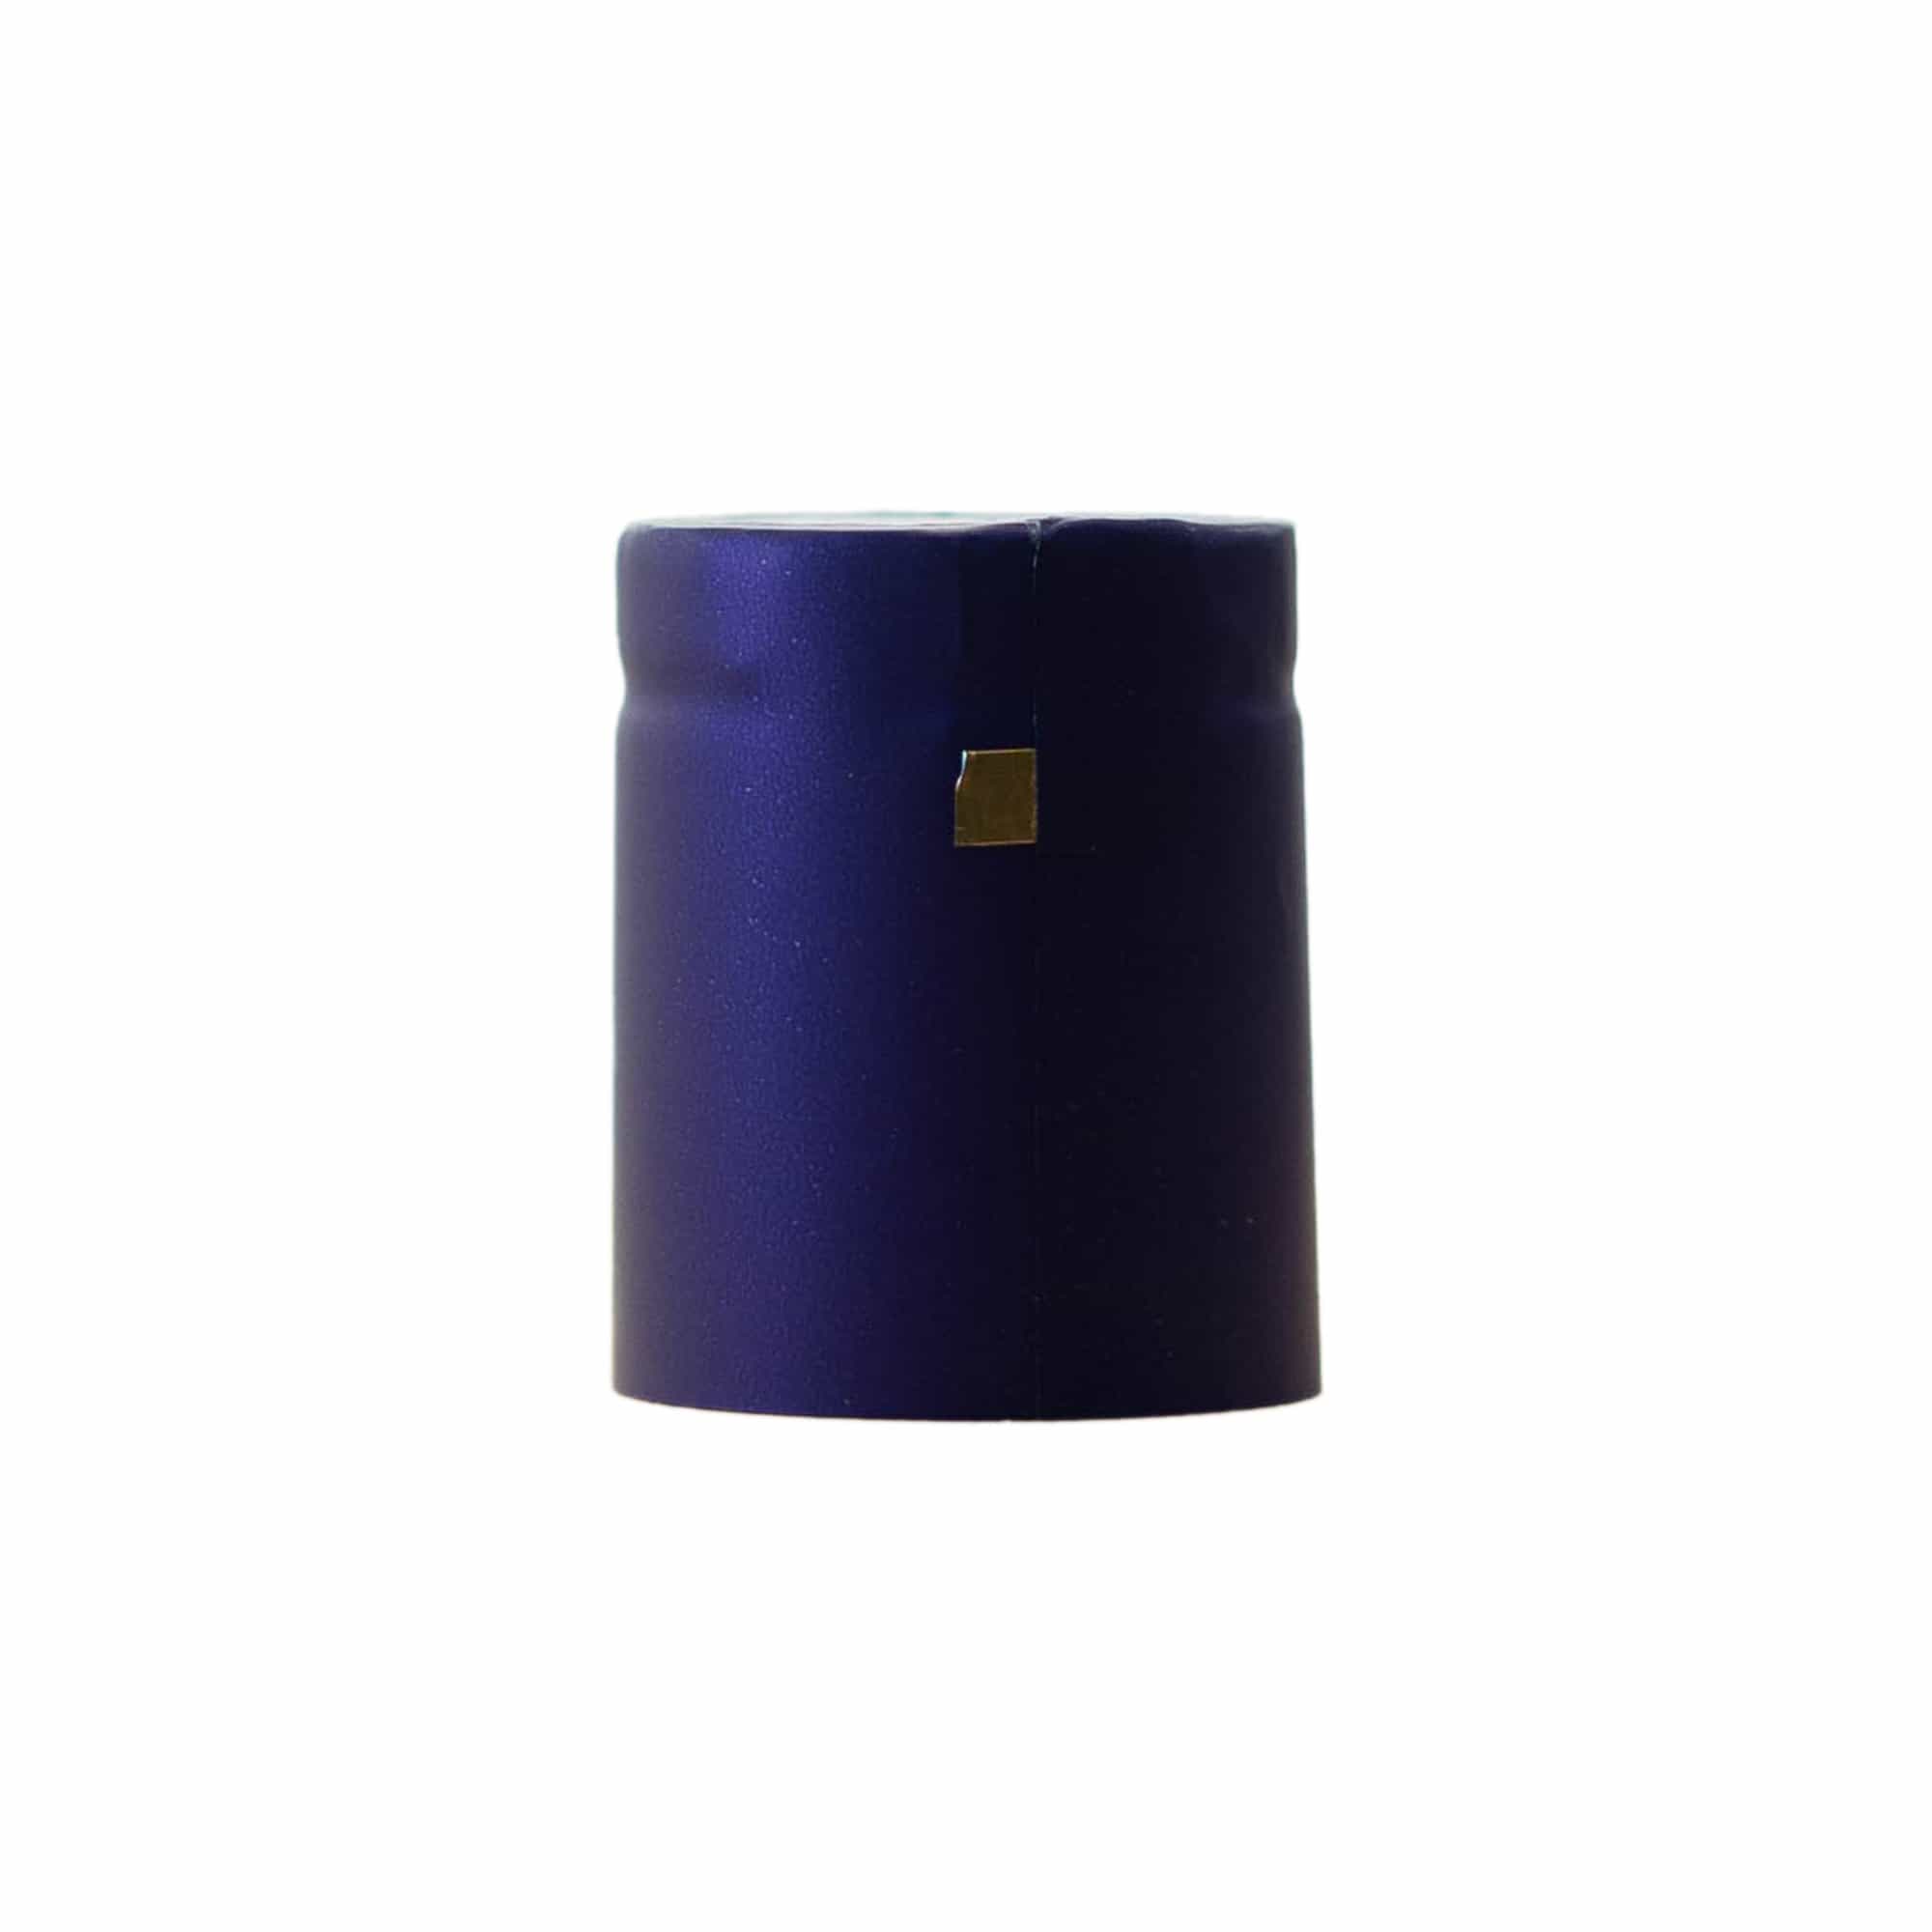 Krimpcapsule 32x41, pvc-kunststof, paars